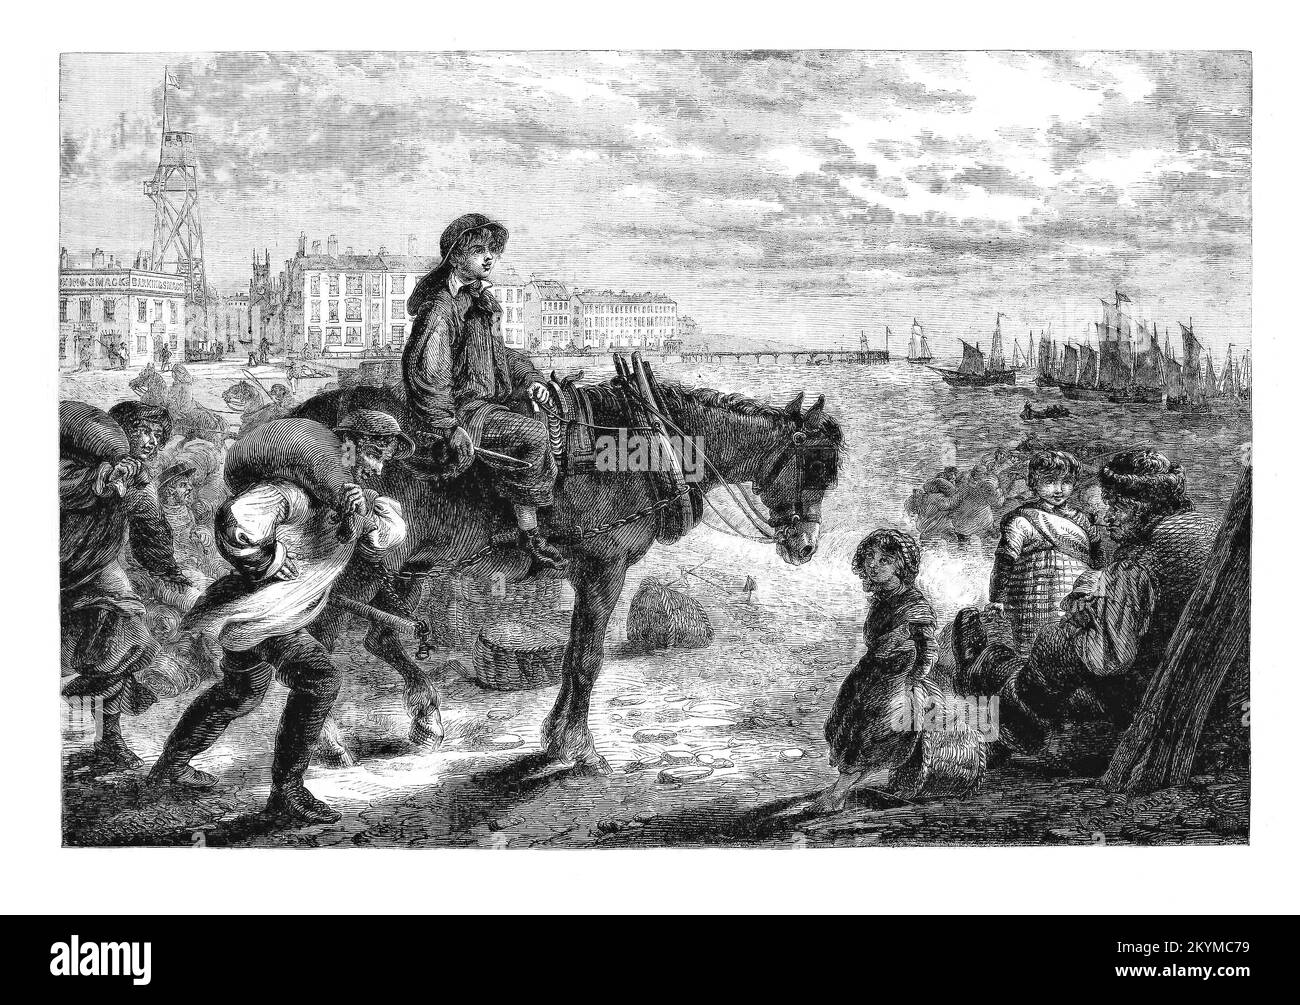 Die frühe Ankunft der ersten Heringsboote der Saison 1861 in Great Yarmouth, einst der wichtigste Heringshafen der Welt. Die Blütezeit und der Wohlstand von Yarmouth beruhten auf der großen Heringsflotte, die ihren Höhepunkt Anfang des 20.. Jahrhunderts mit etwa 1.000 Schiffen erreichte, die 2.000 Millionen Fische in einer Saison an Land brachten. Mehr als 6.000 Saisonarbeiter, hauptsächlich schottische Fischermädchen, würden nach Yarmouth strömen, um Fische in Fässern auszuweiden und zu salzen, die für den Export nach Norwegen, Sowjetrussland und Deutschland bereit waren. Stockfoto